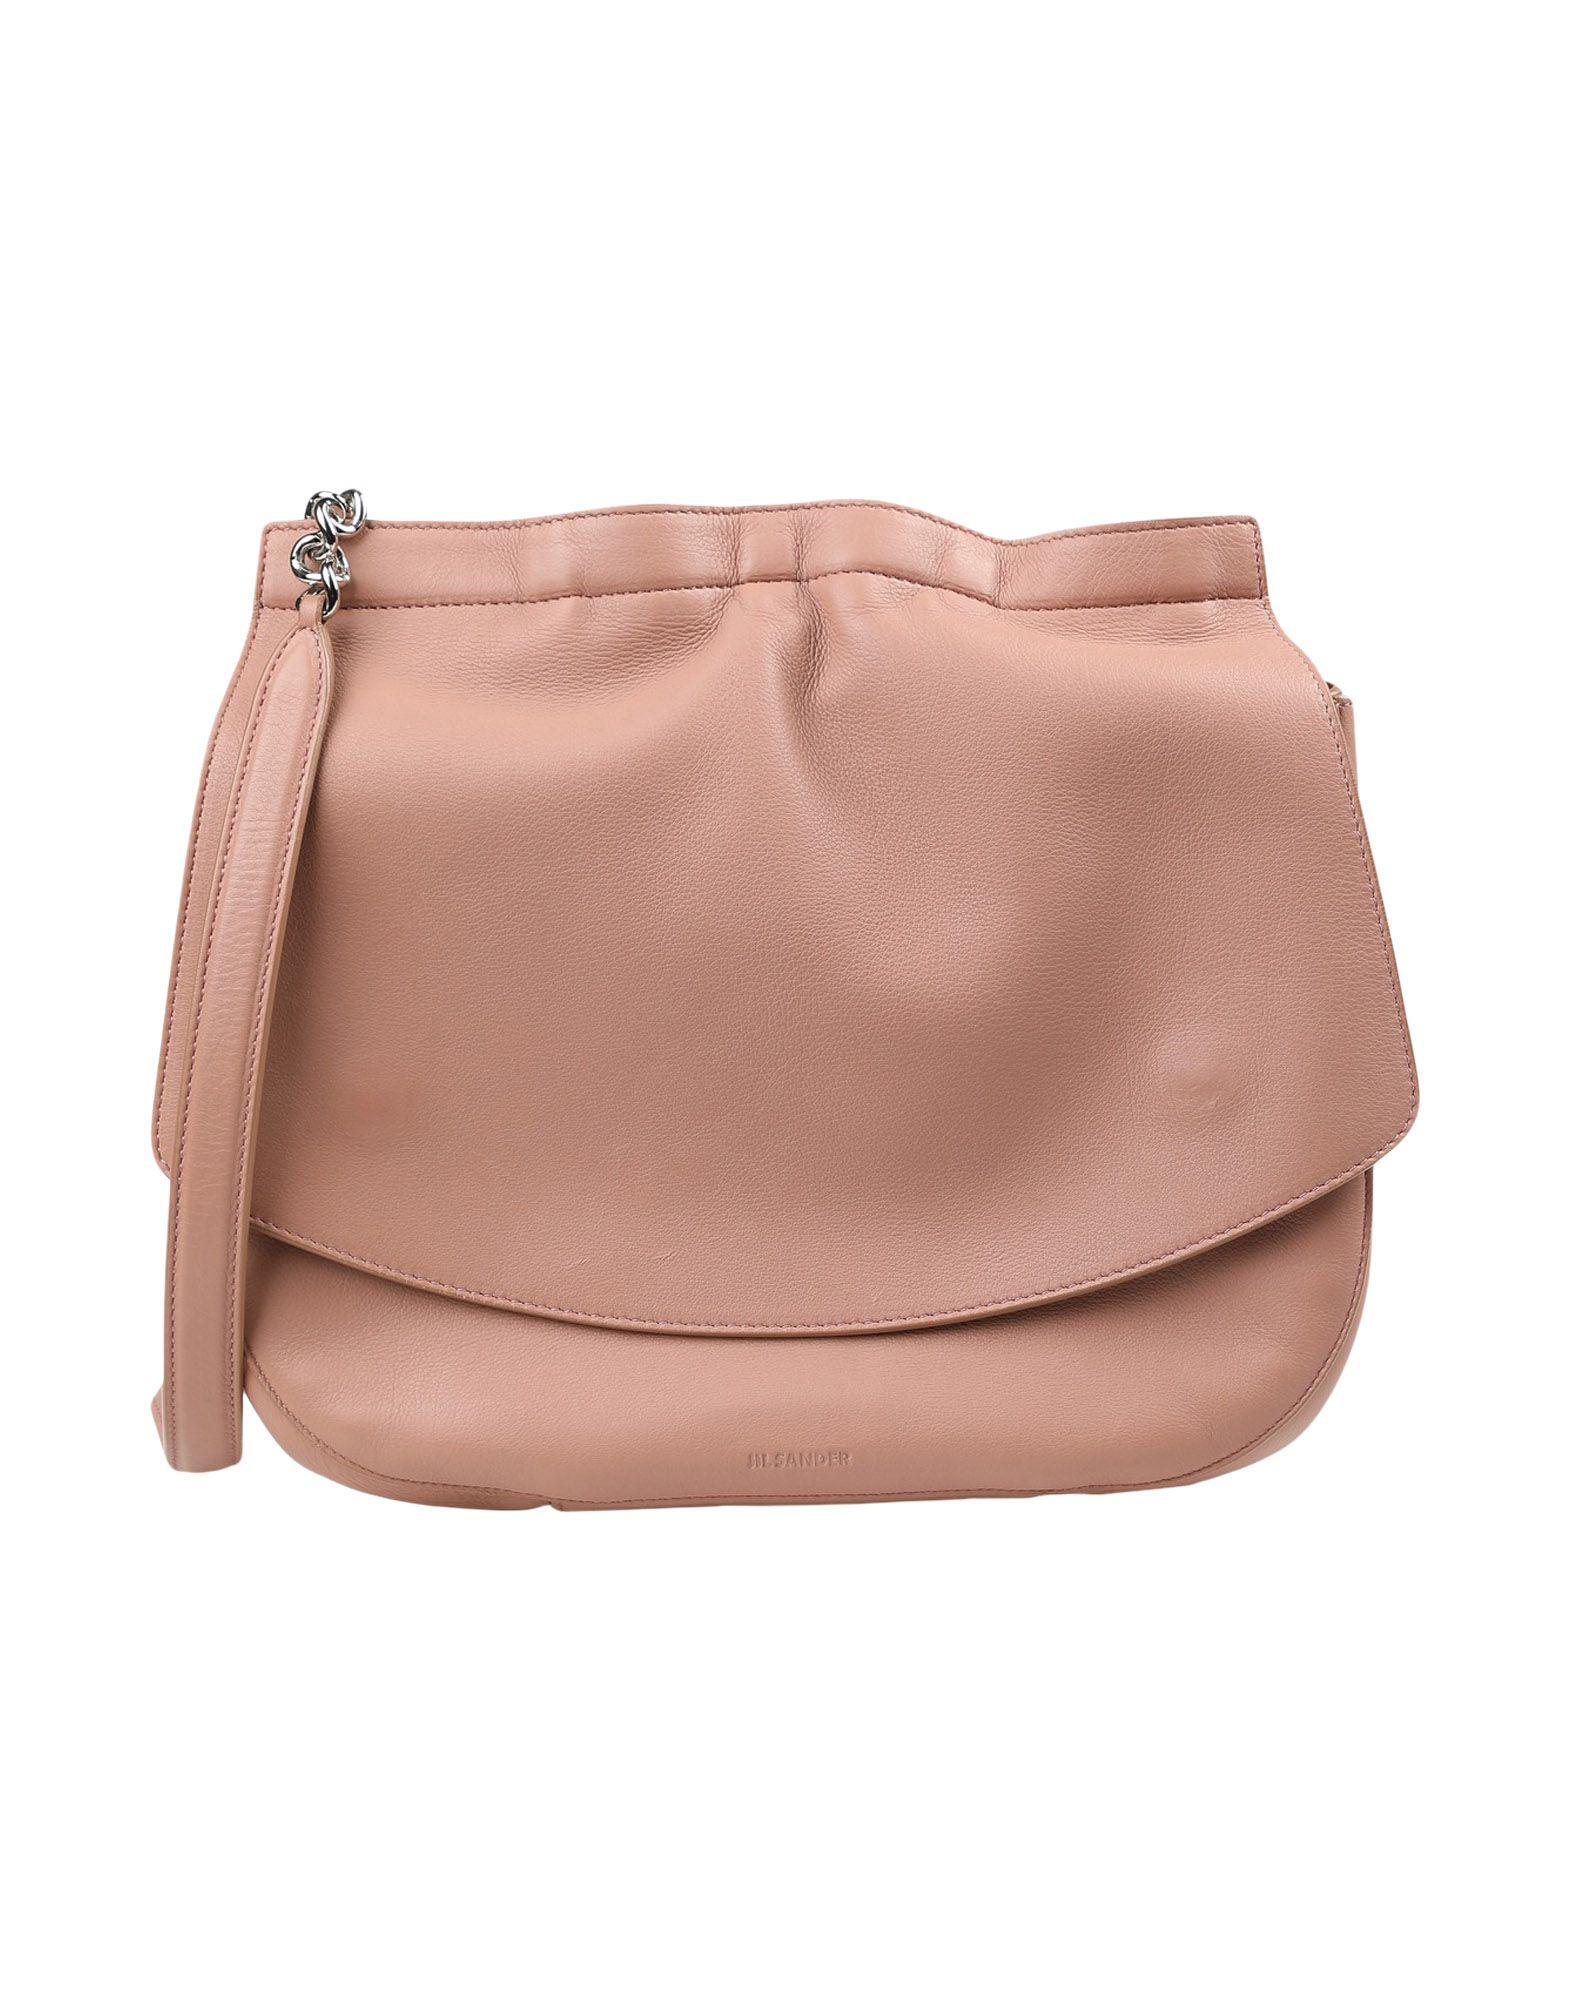 Jil Sander Leather Shoulder Bag in Pink - Lyst